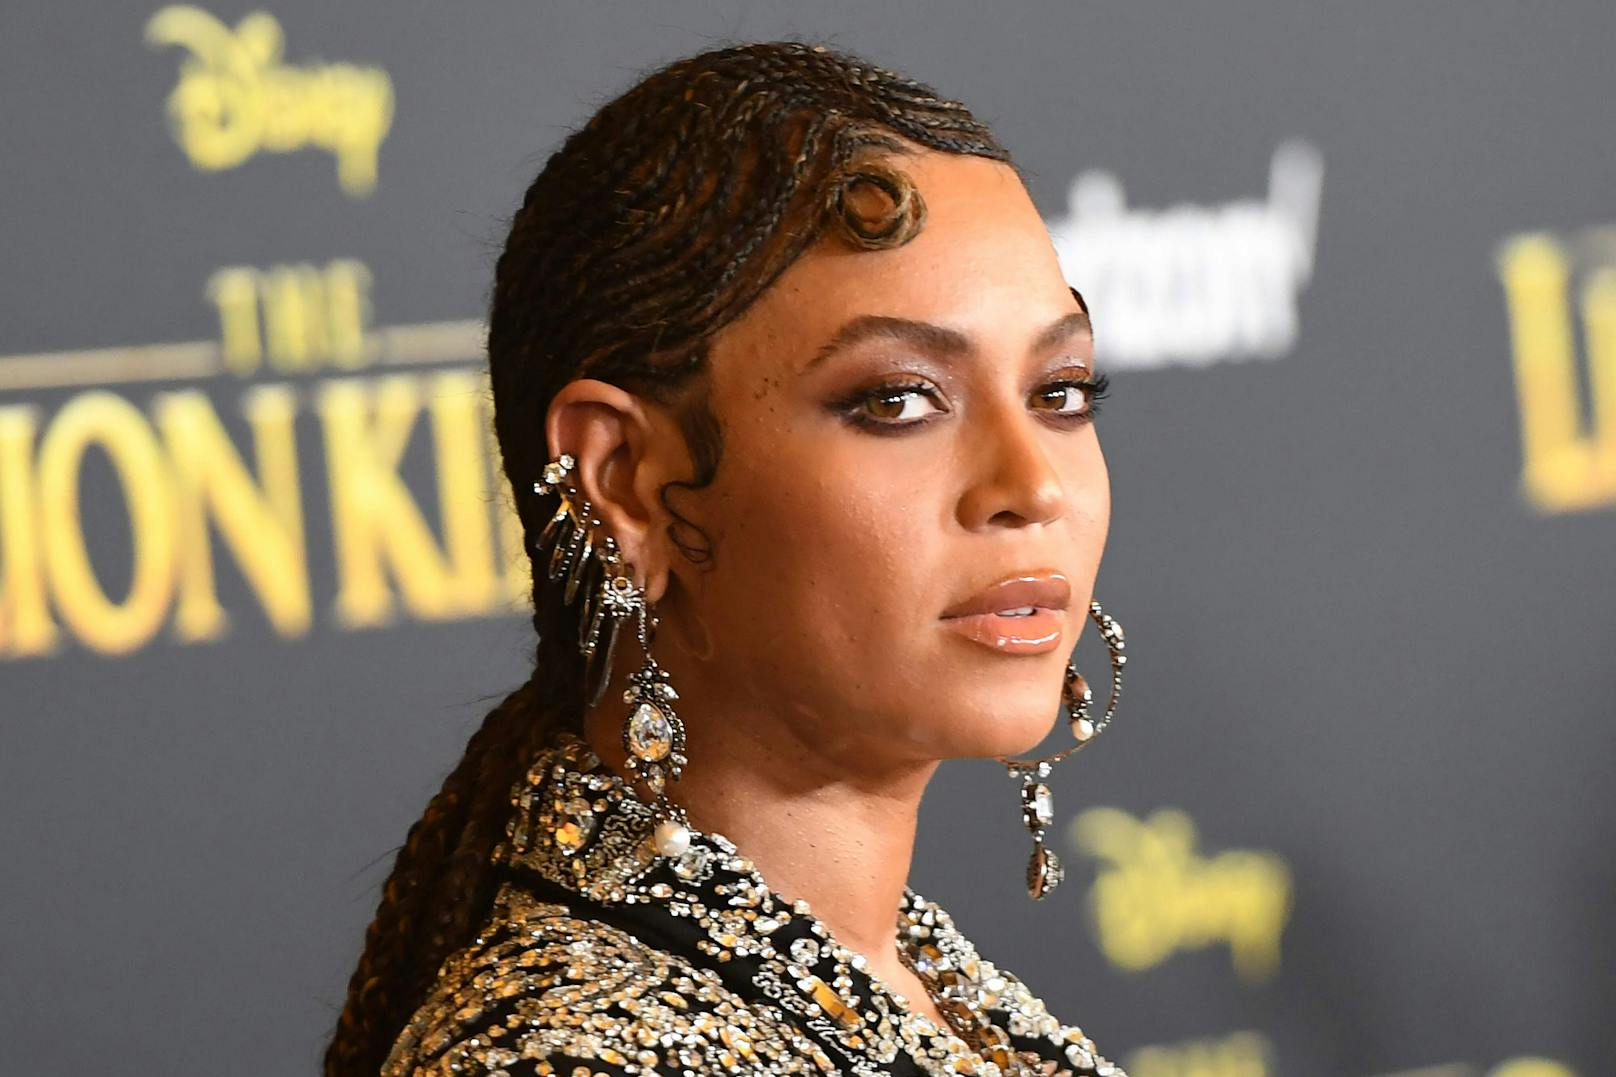 Von "The Lion King" inspiriert hat <strong>Beyoncé </strong>ihr erstes visuelles Album "Black is King" veröffentlicht, das nach Lob jetzt negative Schlagzeilen macht.